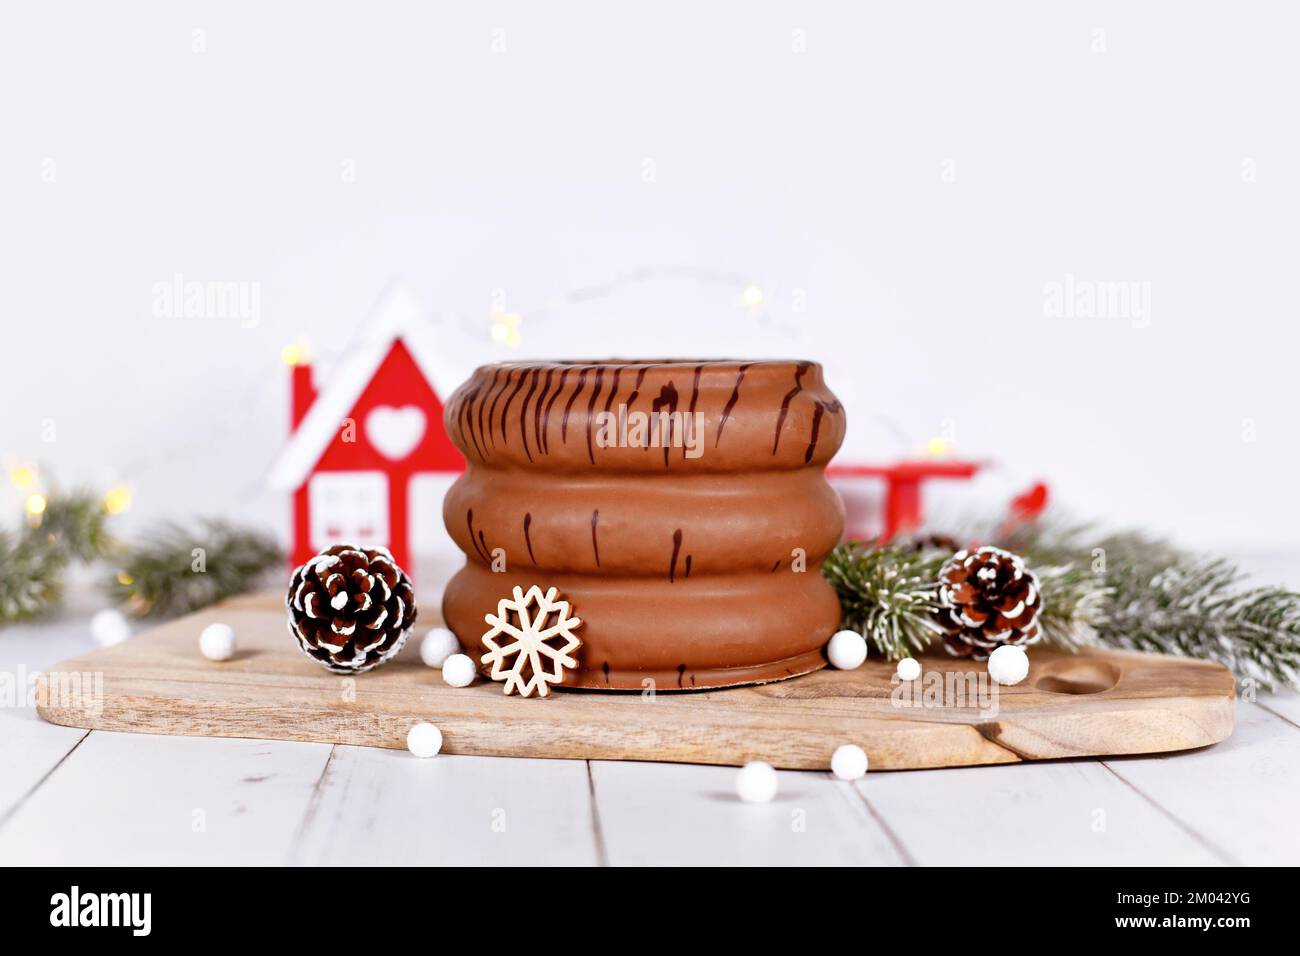 Gâteau appelé 'Baumkuchen', une pâtisserie traditionnelle allemande superposée d'hiver émaillée de chocolat, entouré par la décoration de saison Banque D'Images